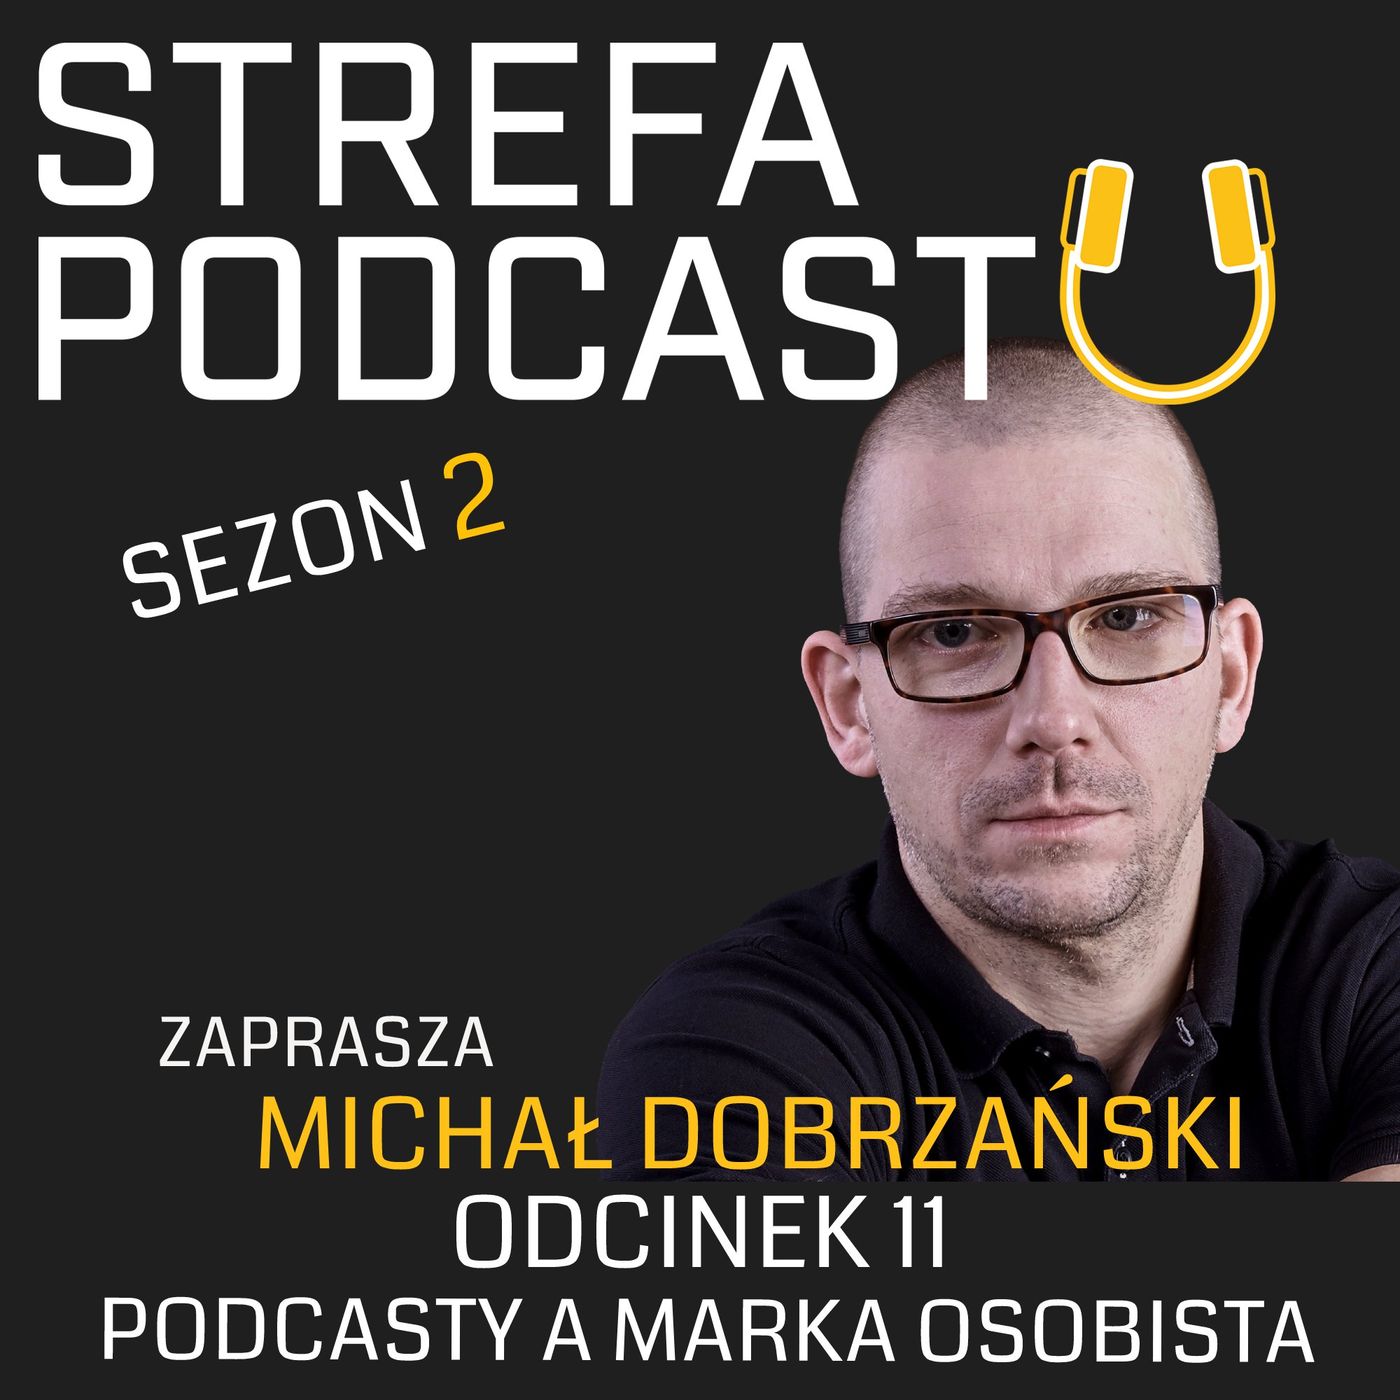 SP2_011 - Podcast a marka osobista - rozmowa z Karoliną Piekus z agencji Concept PR